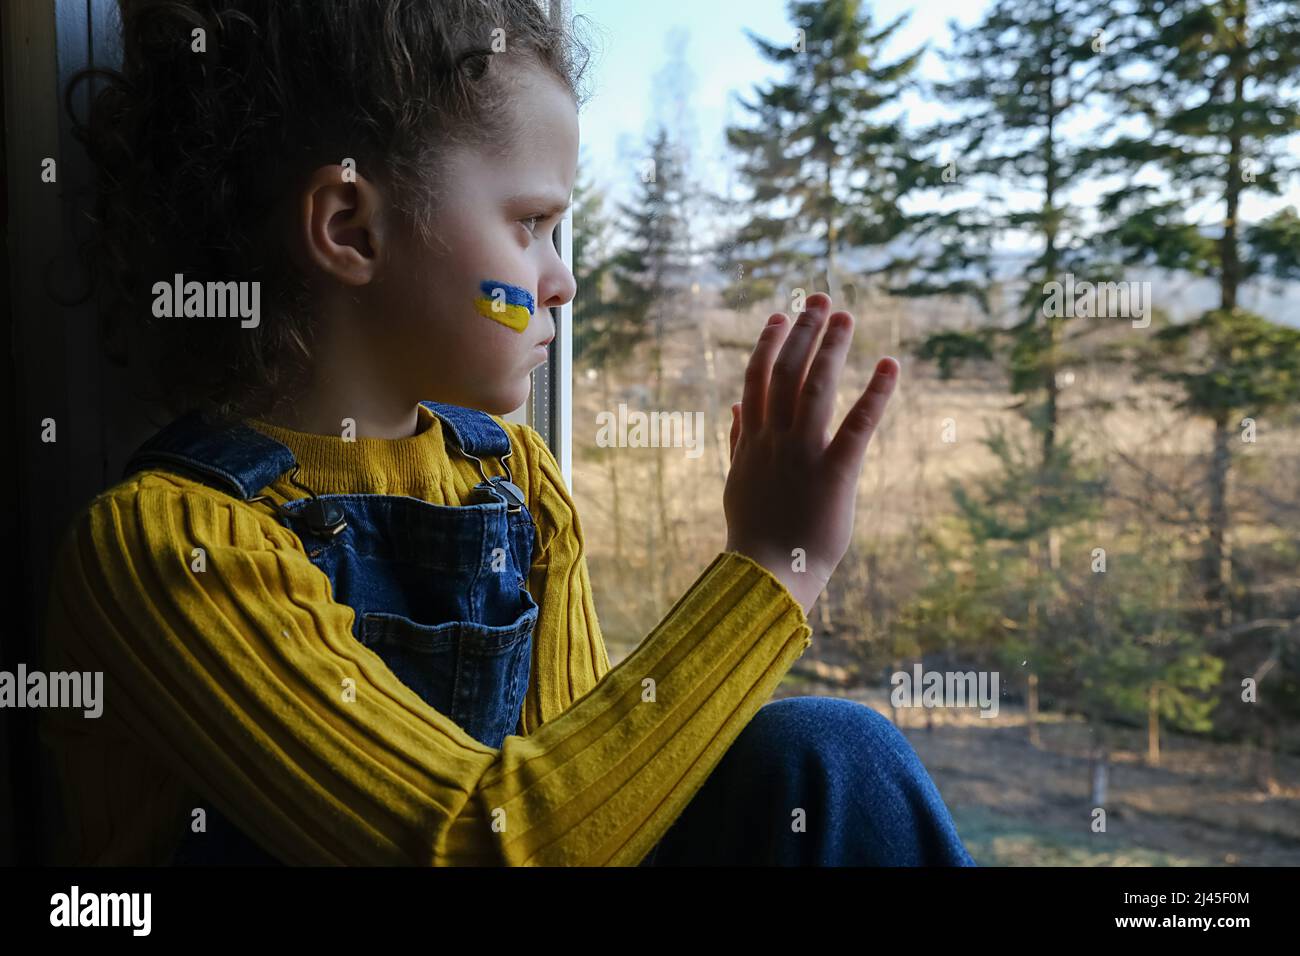 Capretto triste della piccola ragazza con la bandiera dell'ucraina sul fronte, bambino stanco infelice seduto da solo in windowsill nel paese sullo sfondo della natura. Pace, nessuna guerra, h Foto Stock